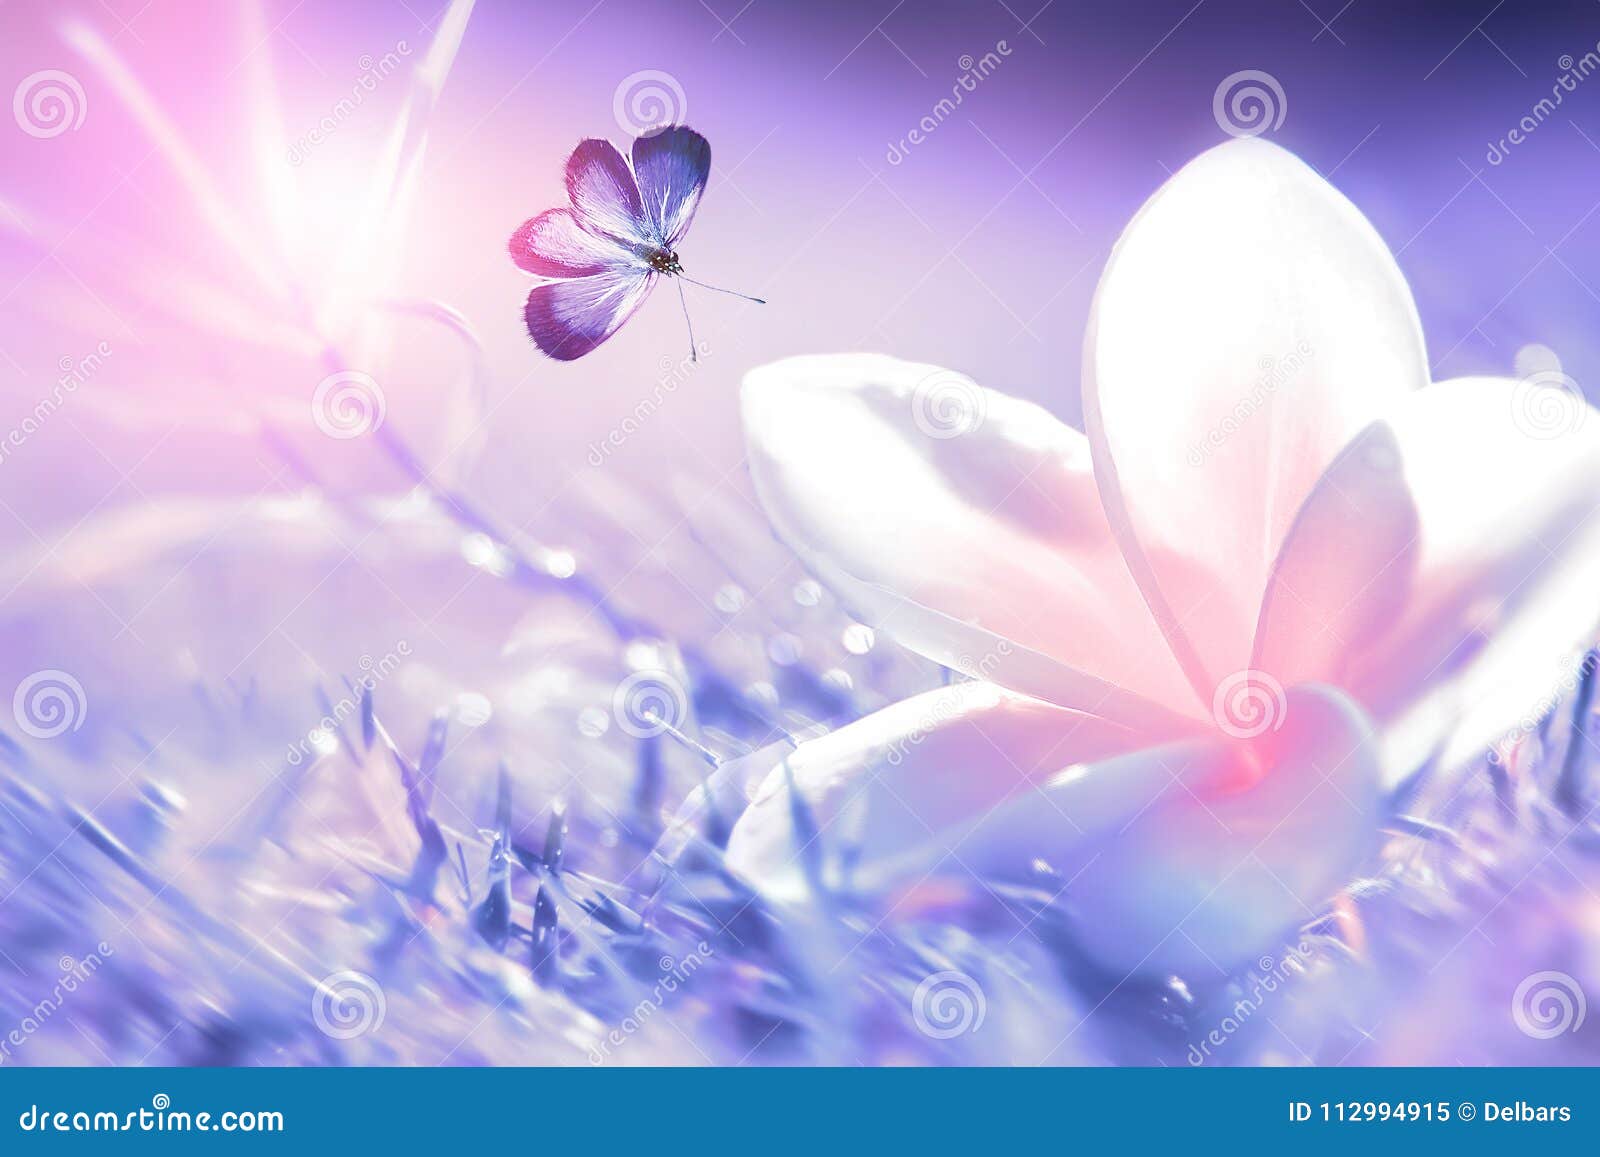 Leinwandbild Schmetterling auf einer Blüte  Frühling